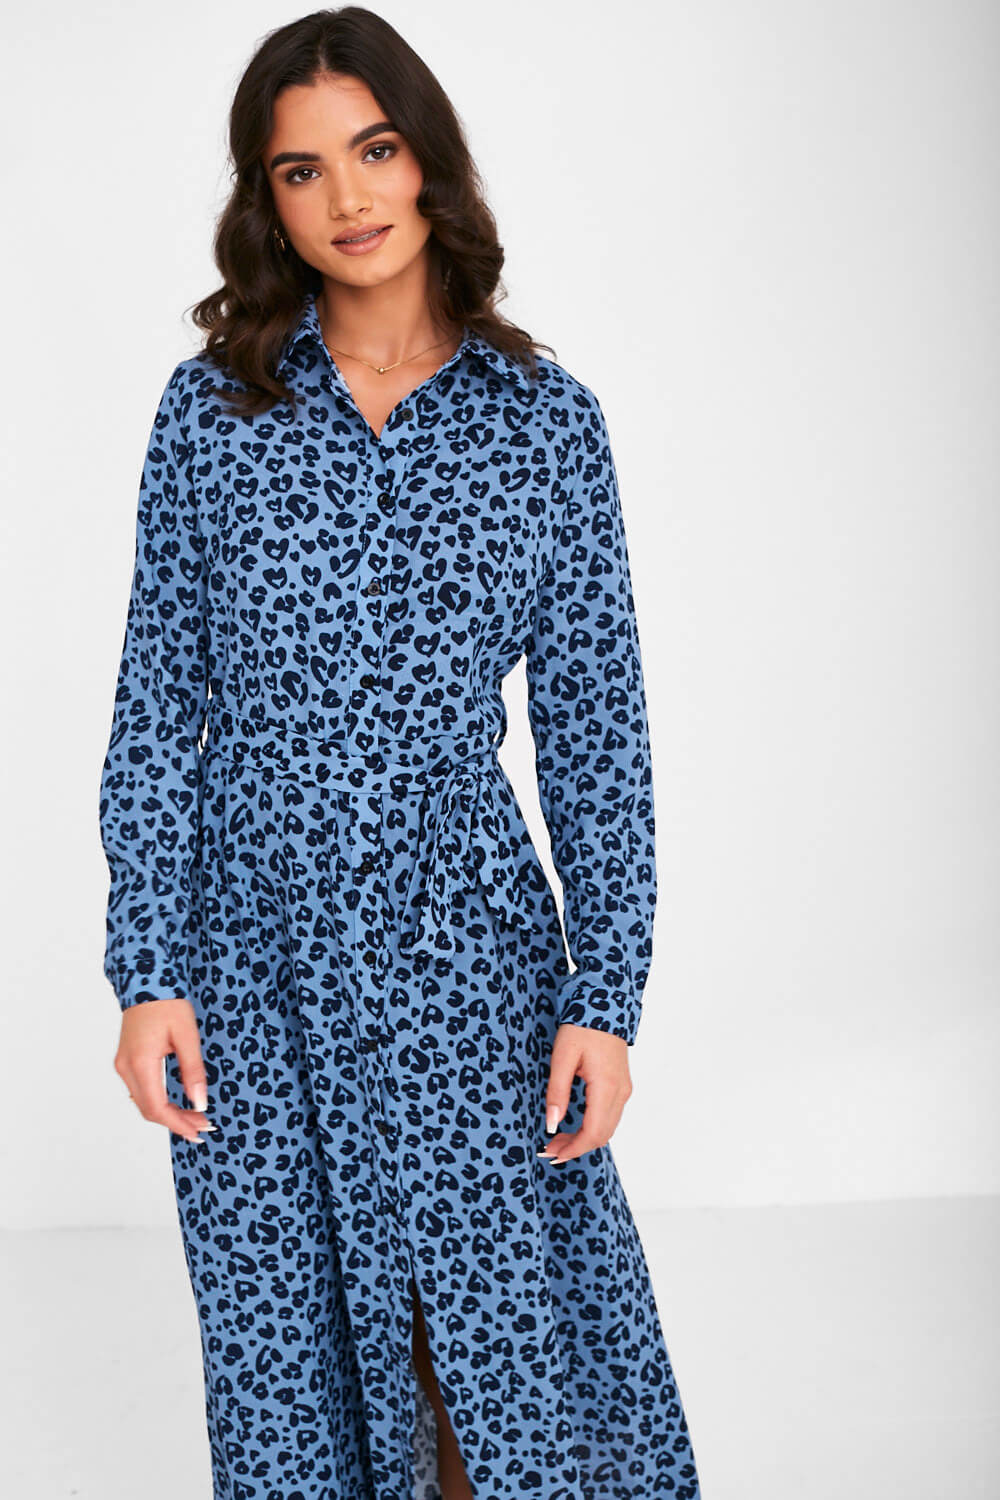 TYRA - SHEER LEOPARD PRINT DRESS  Leopard print dress, Leopard